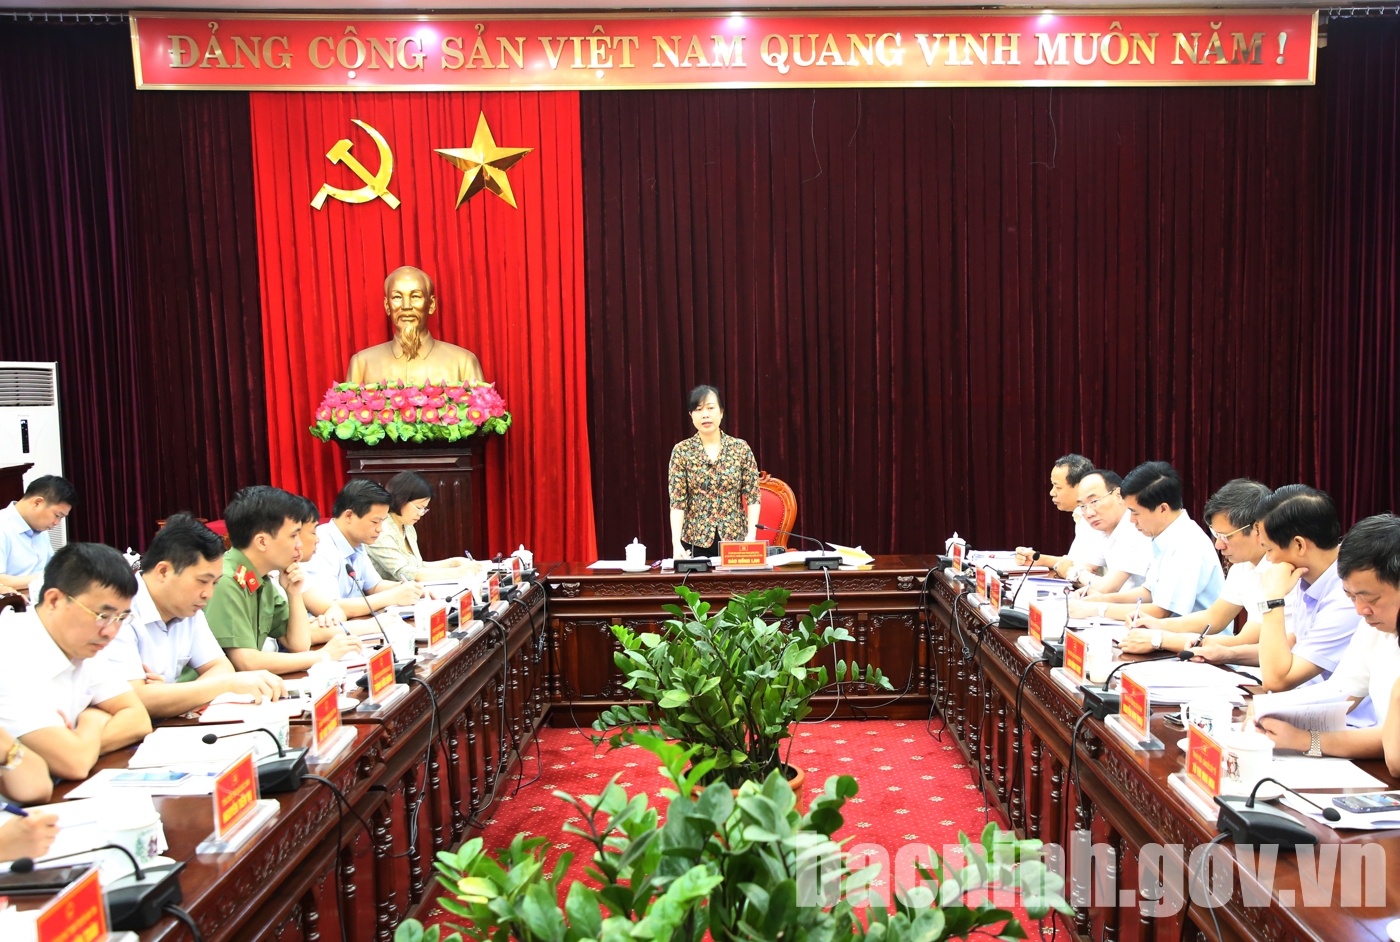 Hội nghị báo cáo tiến độ chuẩn bị tổ chức các hoạt động kỷ niệm 110 năm Ngày sinh Tổng Bí thư Nguyễn Văn Cừ